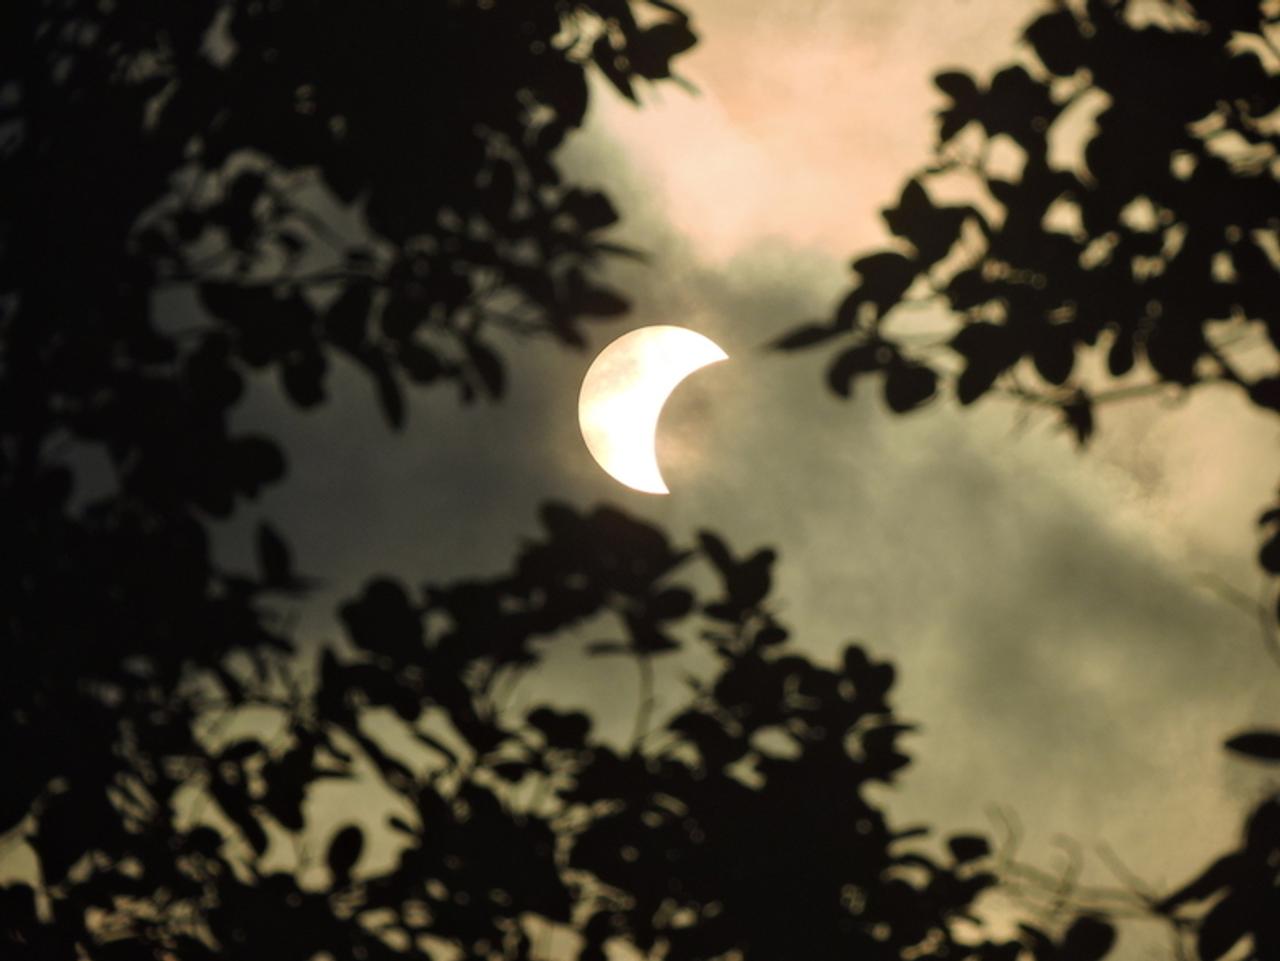 8月21日に大規模な日食を迎えるアメリカ。悪質な日食メガネが米Amazonで出回り払い戻し